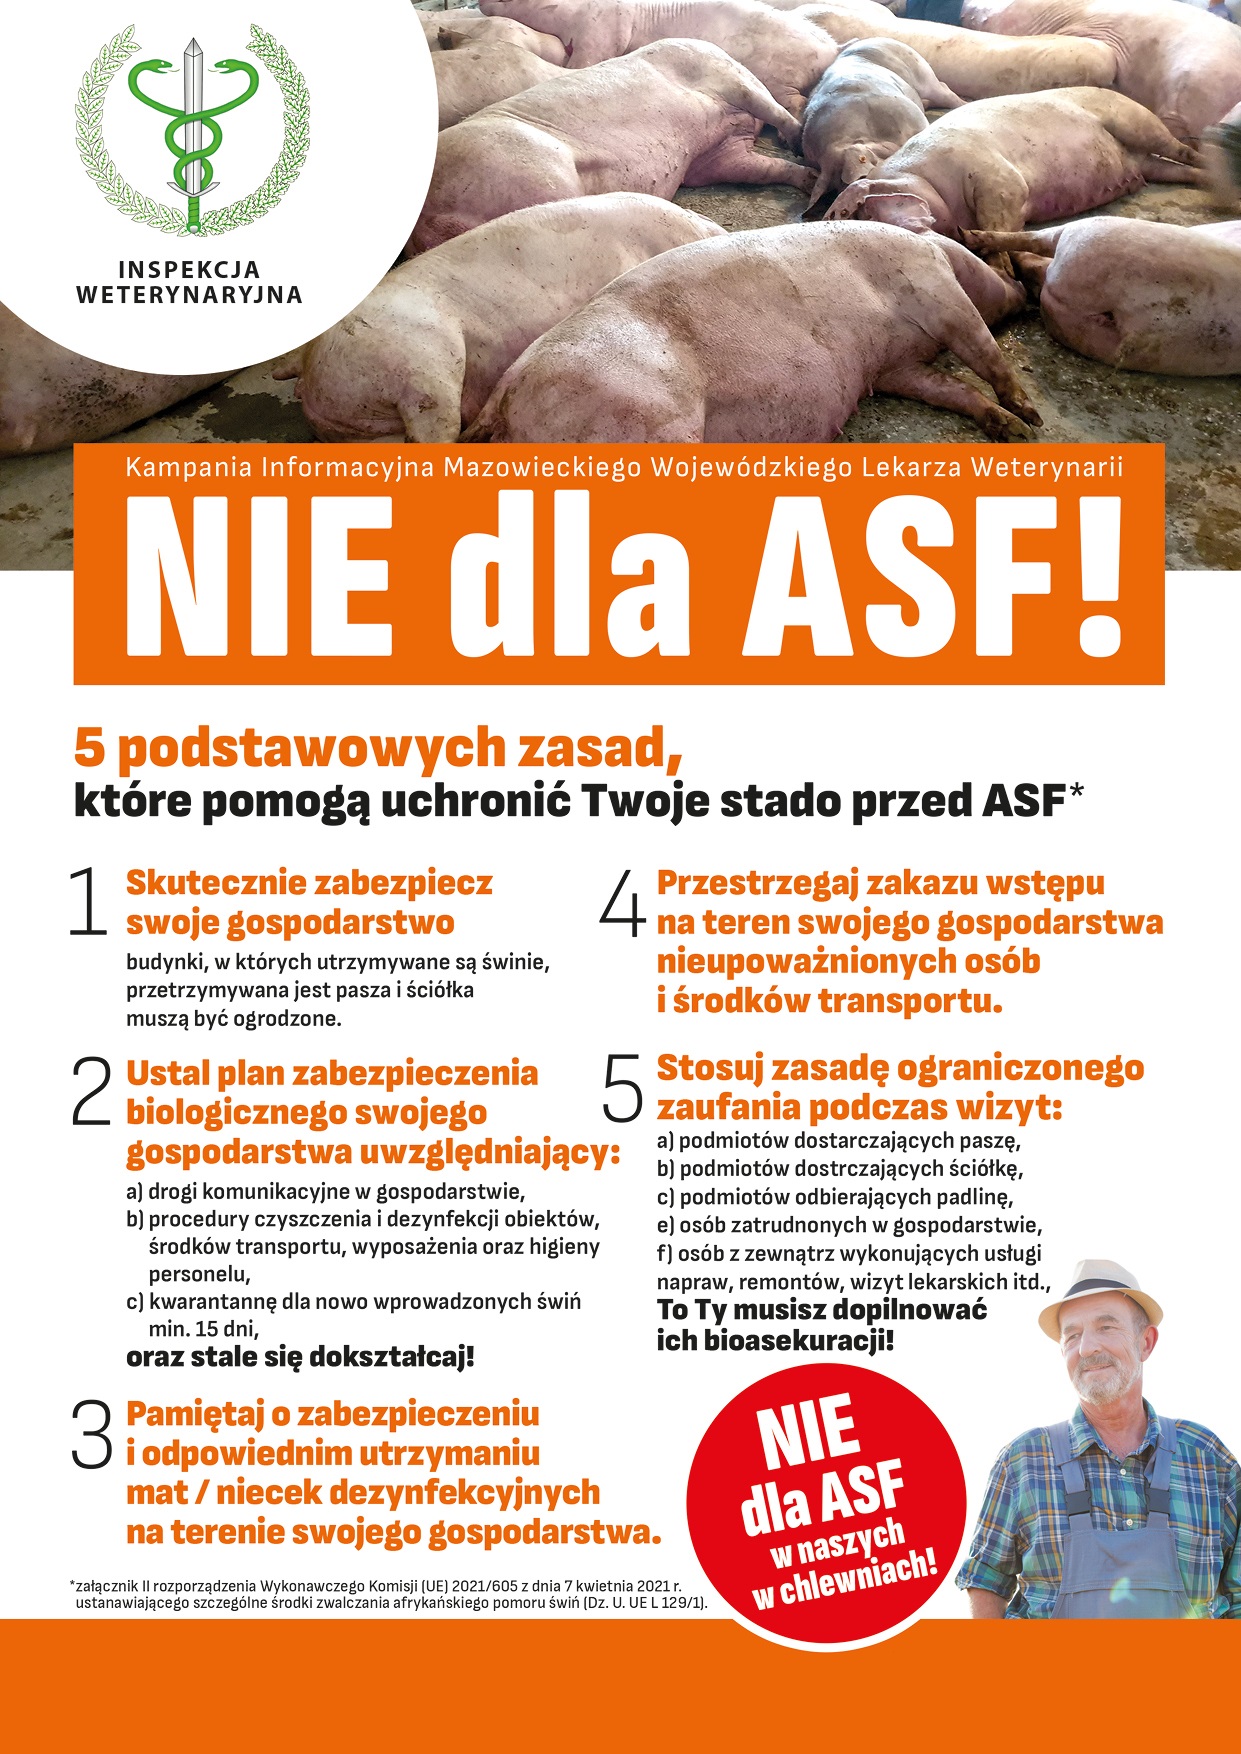 Uwaga hodowcy! Informacja w sprawie przeciwdziałania ASF